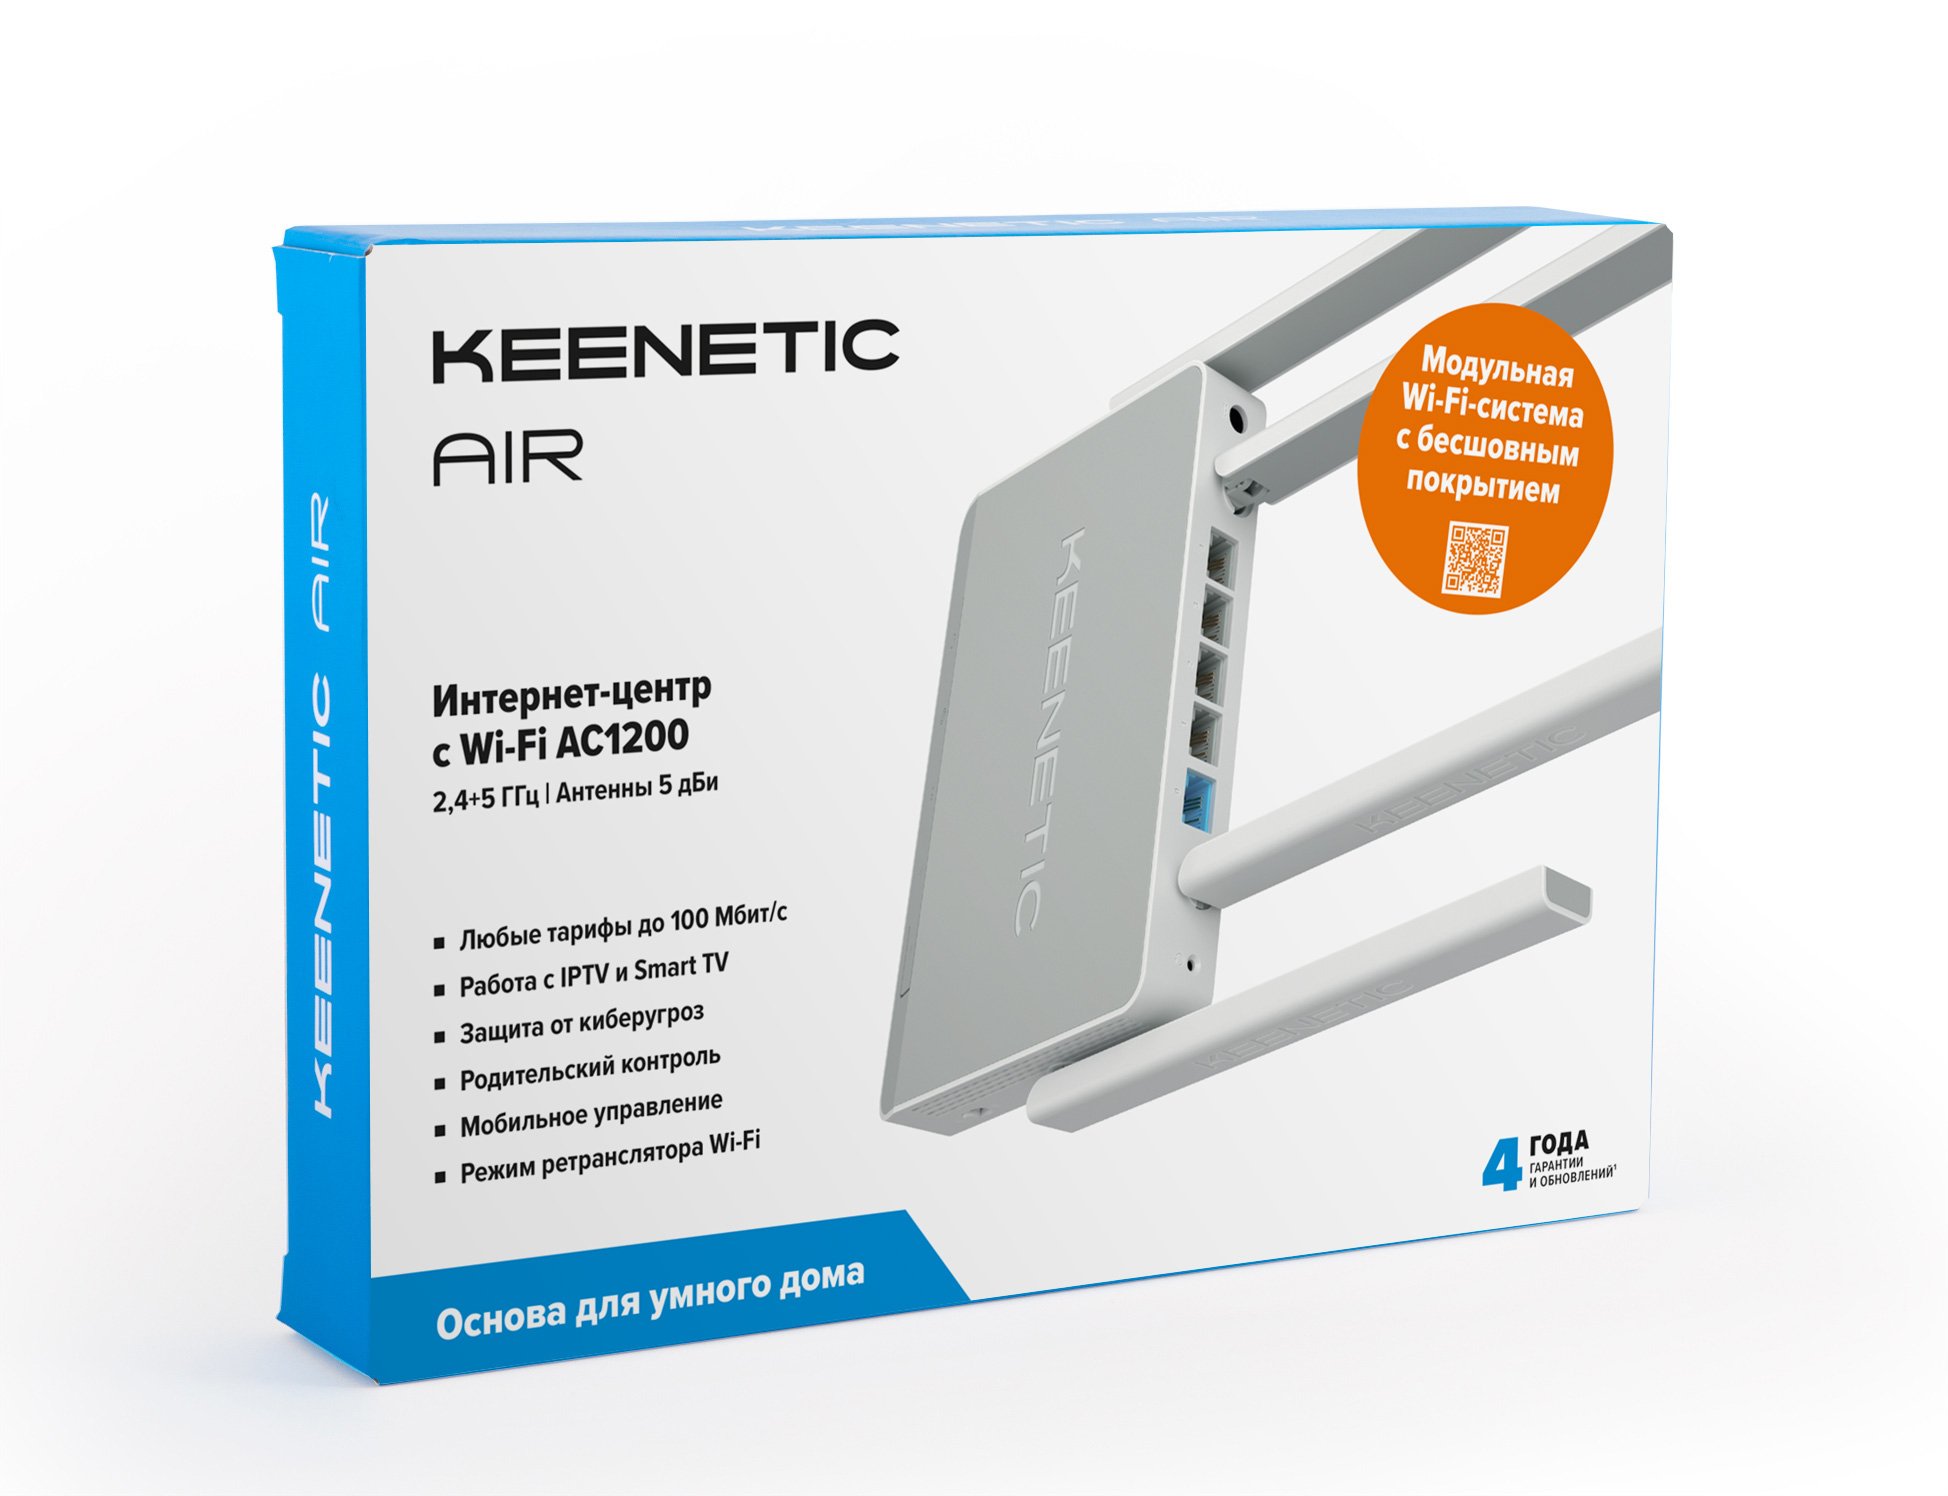 Кинетик бади. Keenetic Extra ac1200. Wi-Fi роутер Keenetic Air (KN-1613). Wi-Fi Mesh система Keenetic Air Kit (KN-Kit-001), белый. Keenetic Air ac1200.